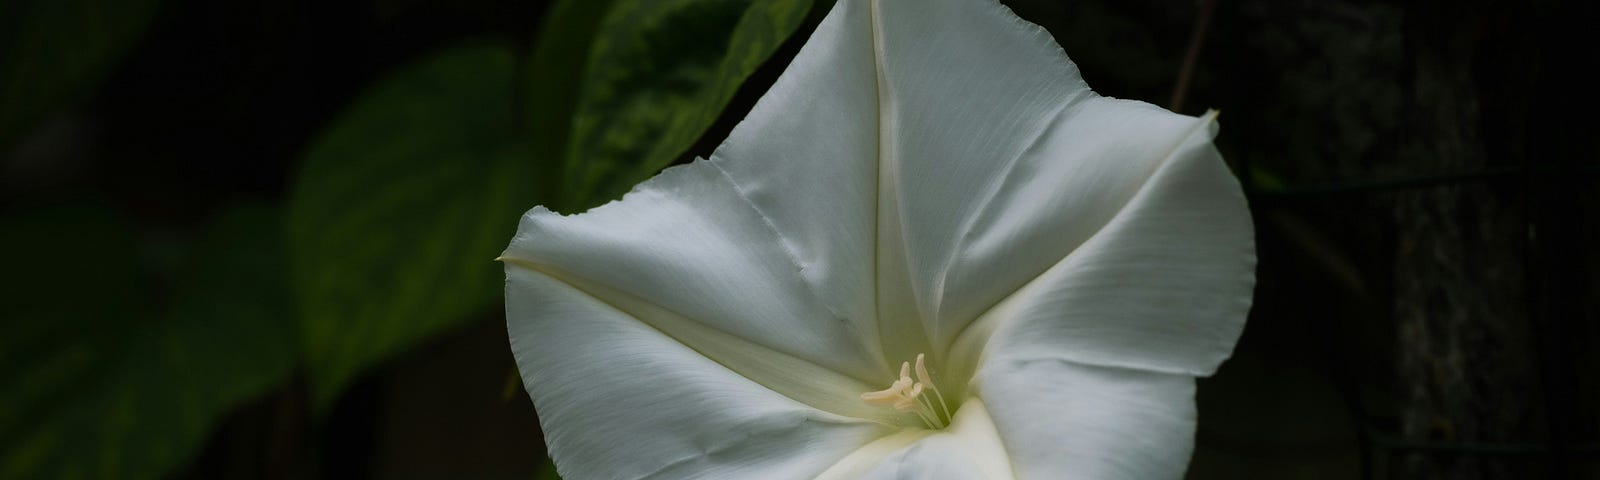 white flower on dark background